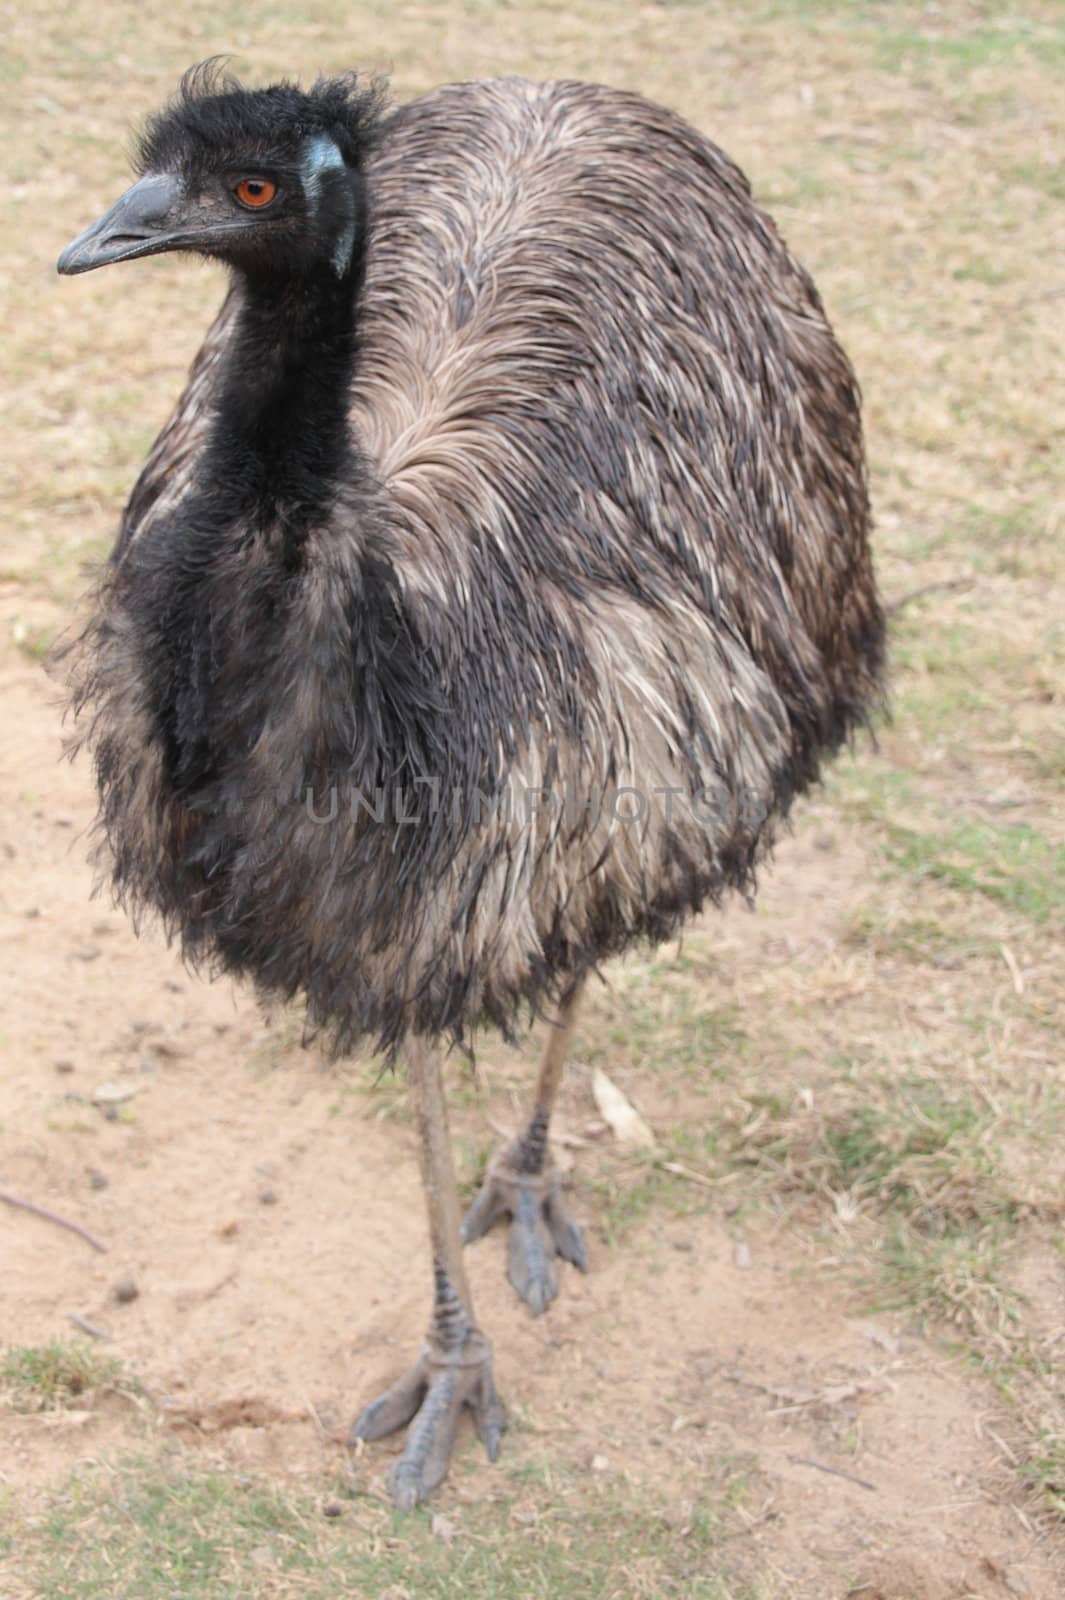 Full body front shot of an Australian Emu